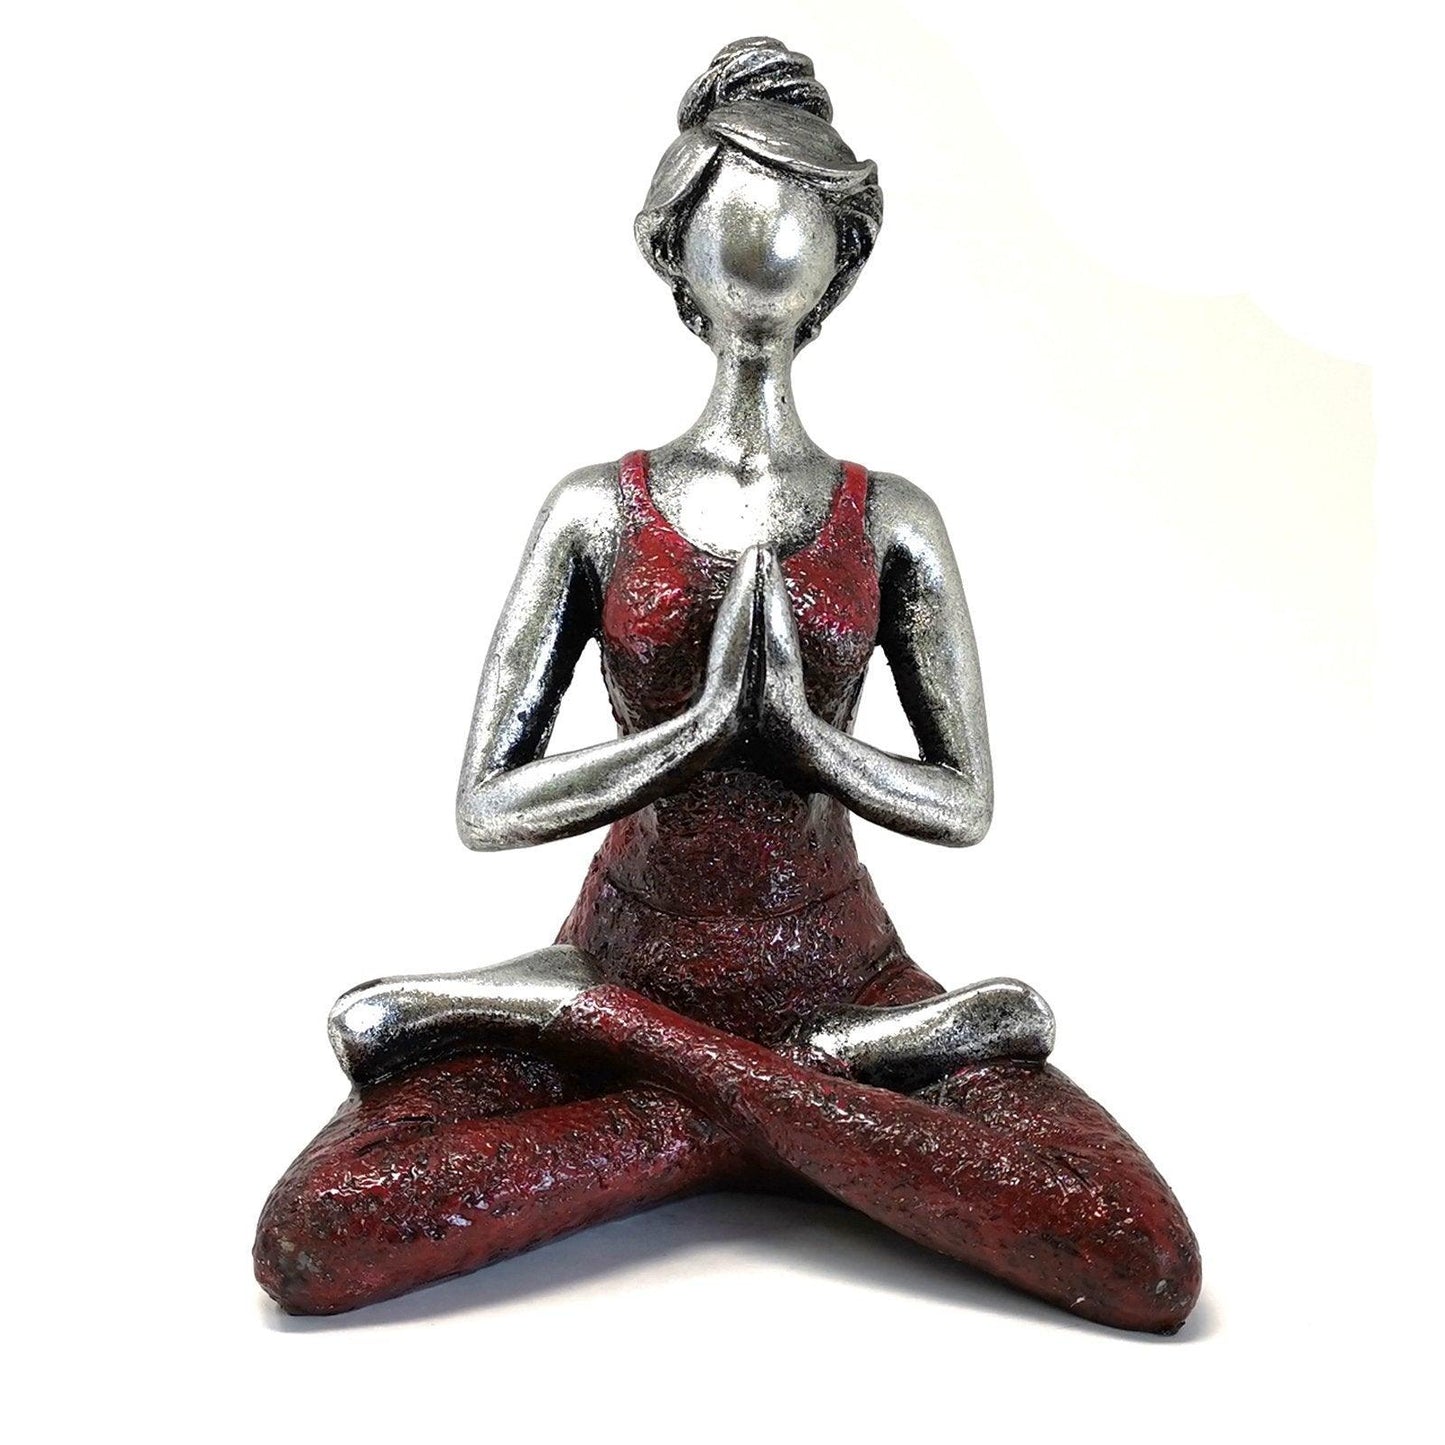 Yoga Lady Figure Statue Ornament - Silver & Bordeaux 24cm